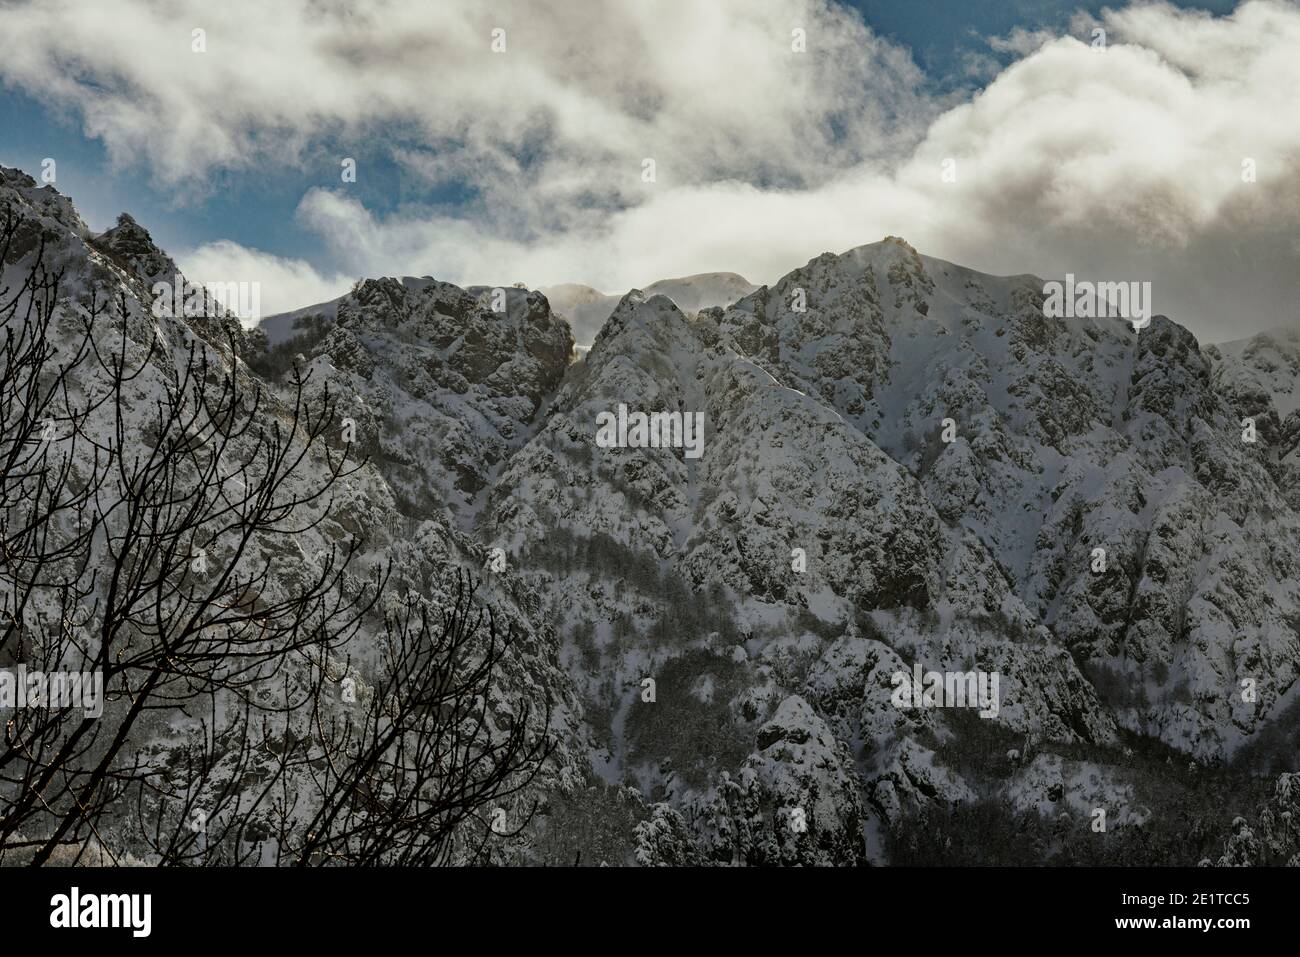 Les sommets enneigés de Camosciara dans les Abruzzes Latium et le parc national de Molise. Abruzzes, Italie, europe Banque D'Images